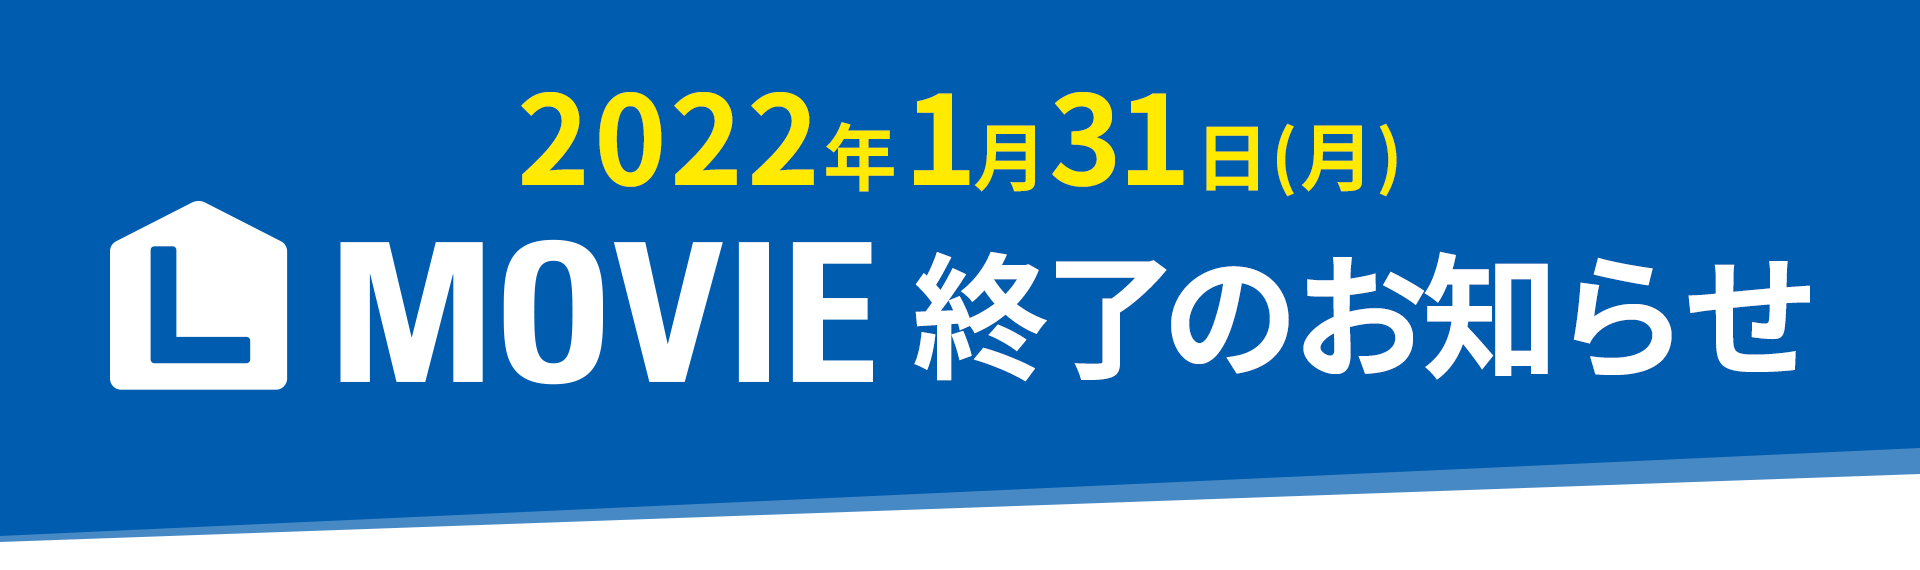 【告知】L MOVIEサービス提供終了のお知らせ